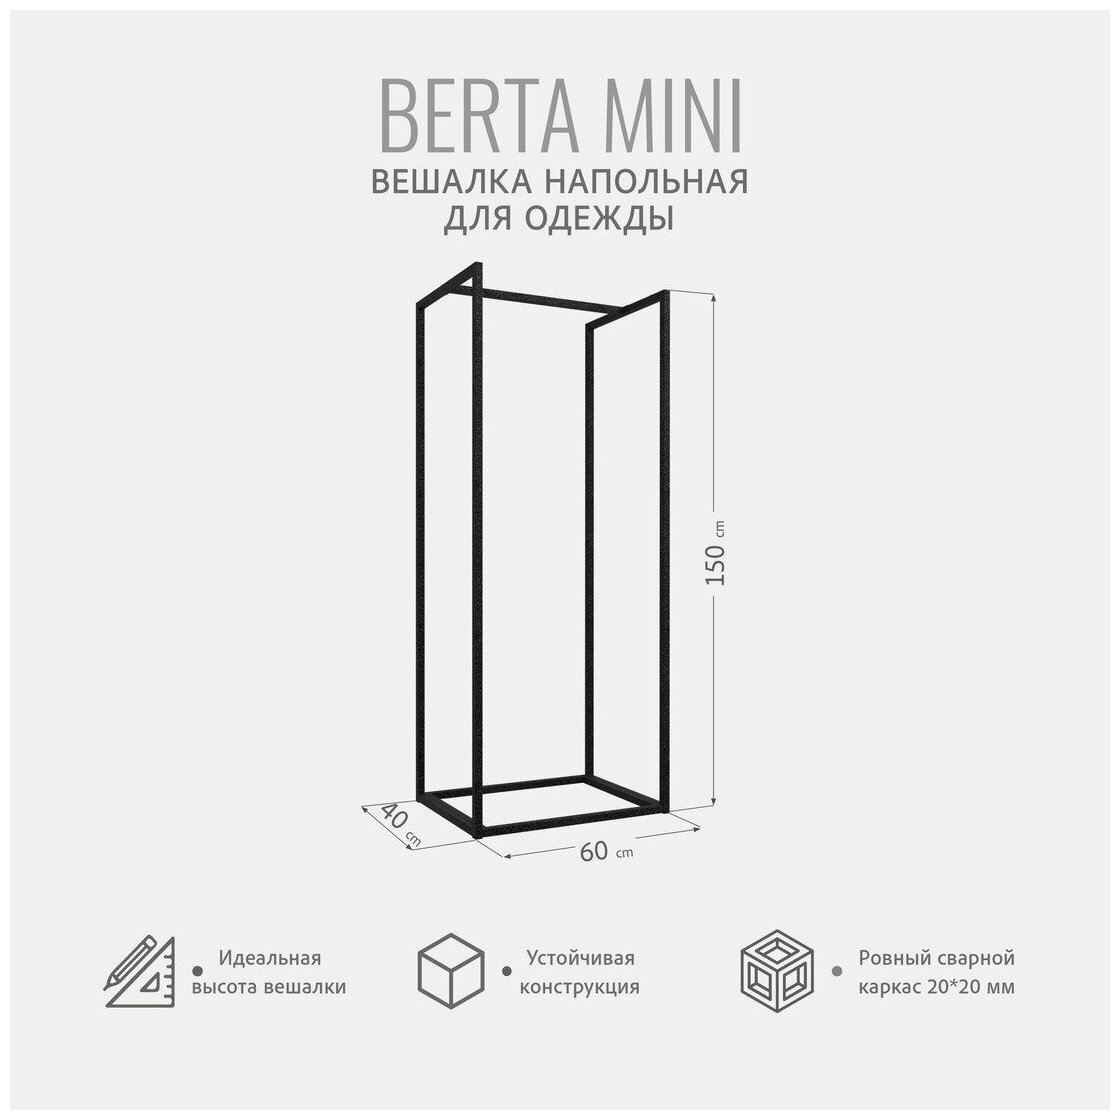 Вешалка напольная для одежды, BERTA mini loft, передвижная, черная, 60х150х40 см, Гростат - фотография № 2